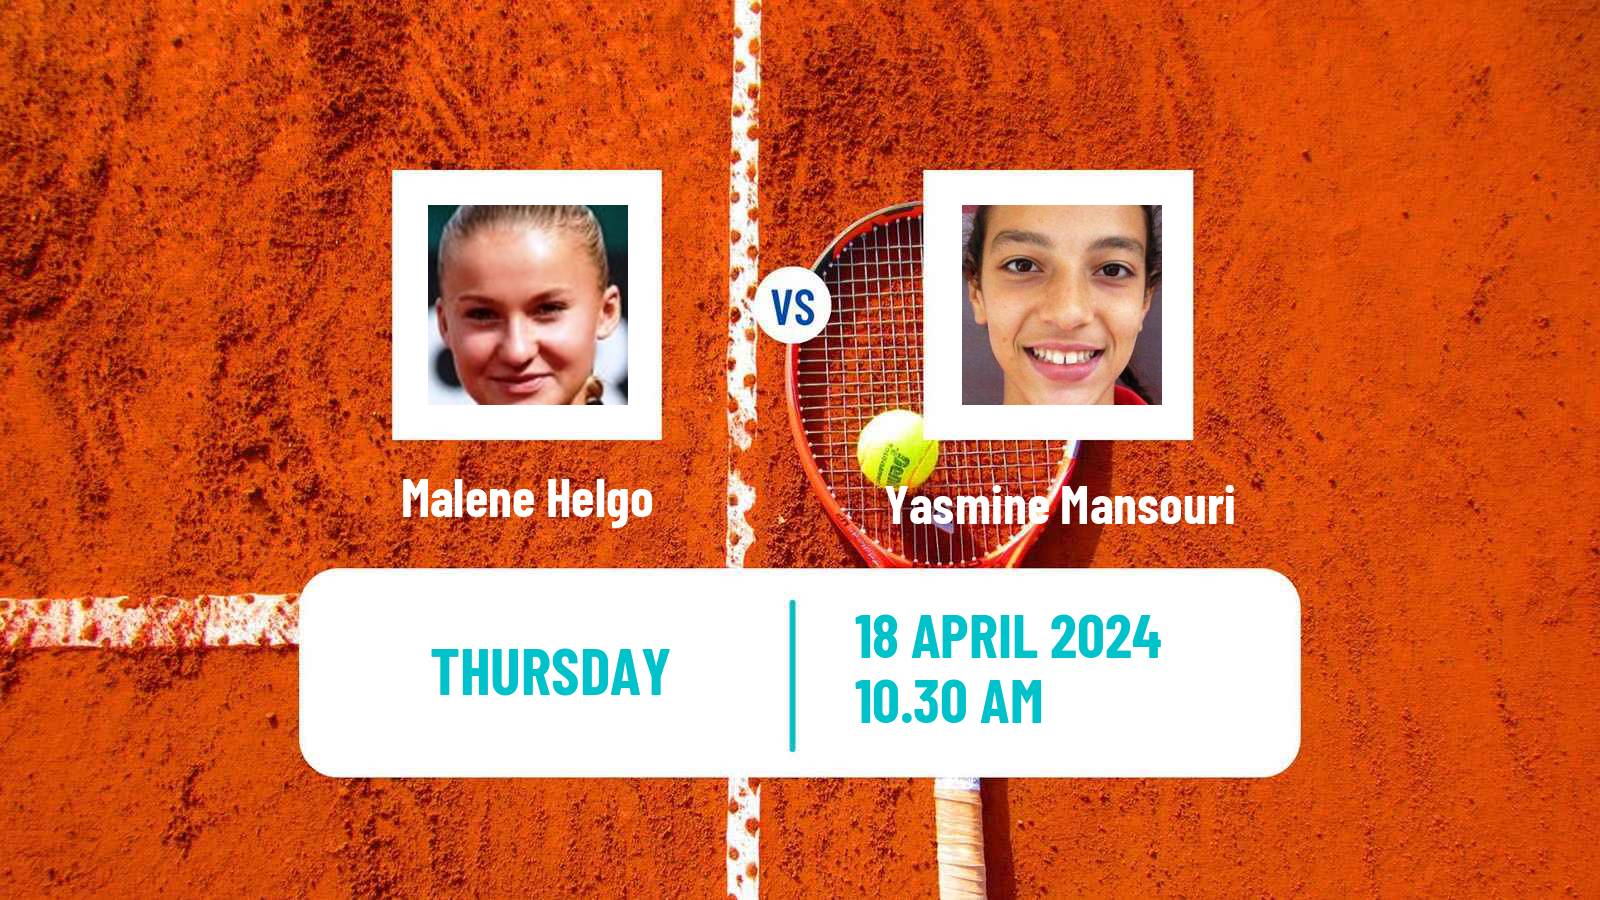 Tennis ITF W35 Hammamet 5 Women Malene Helgo - Yasmine Mansouri